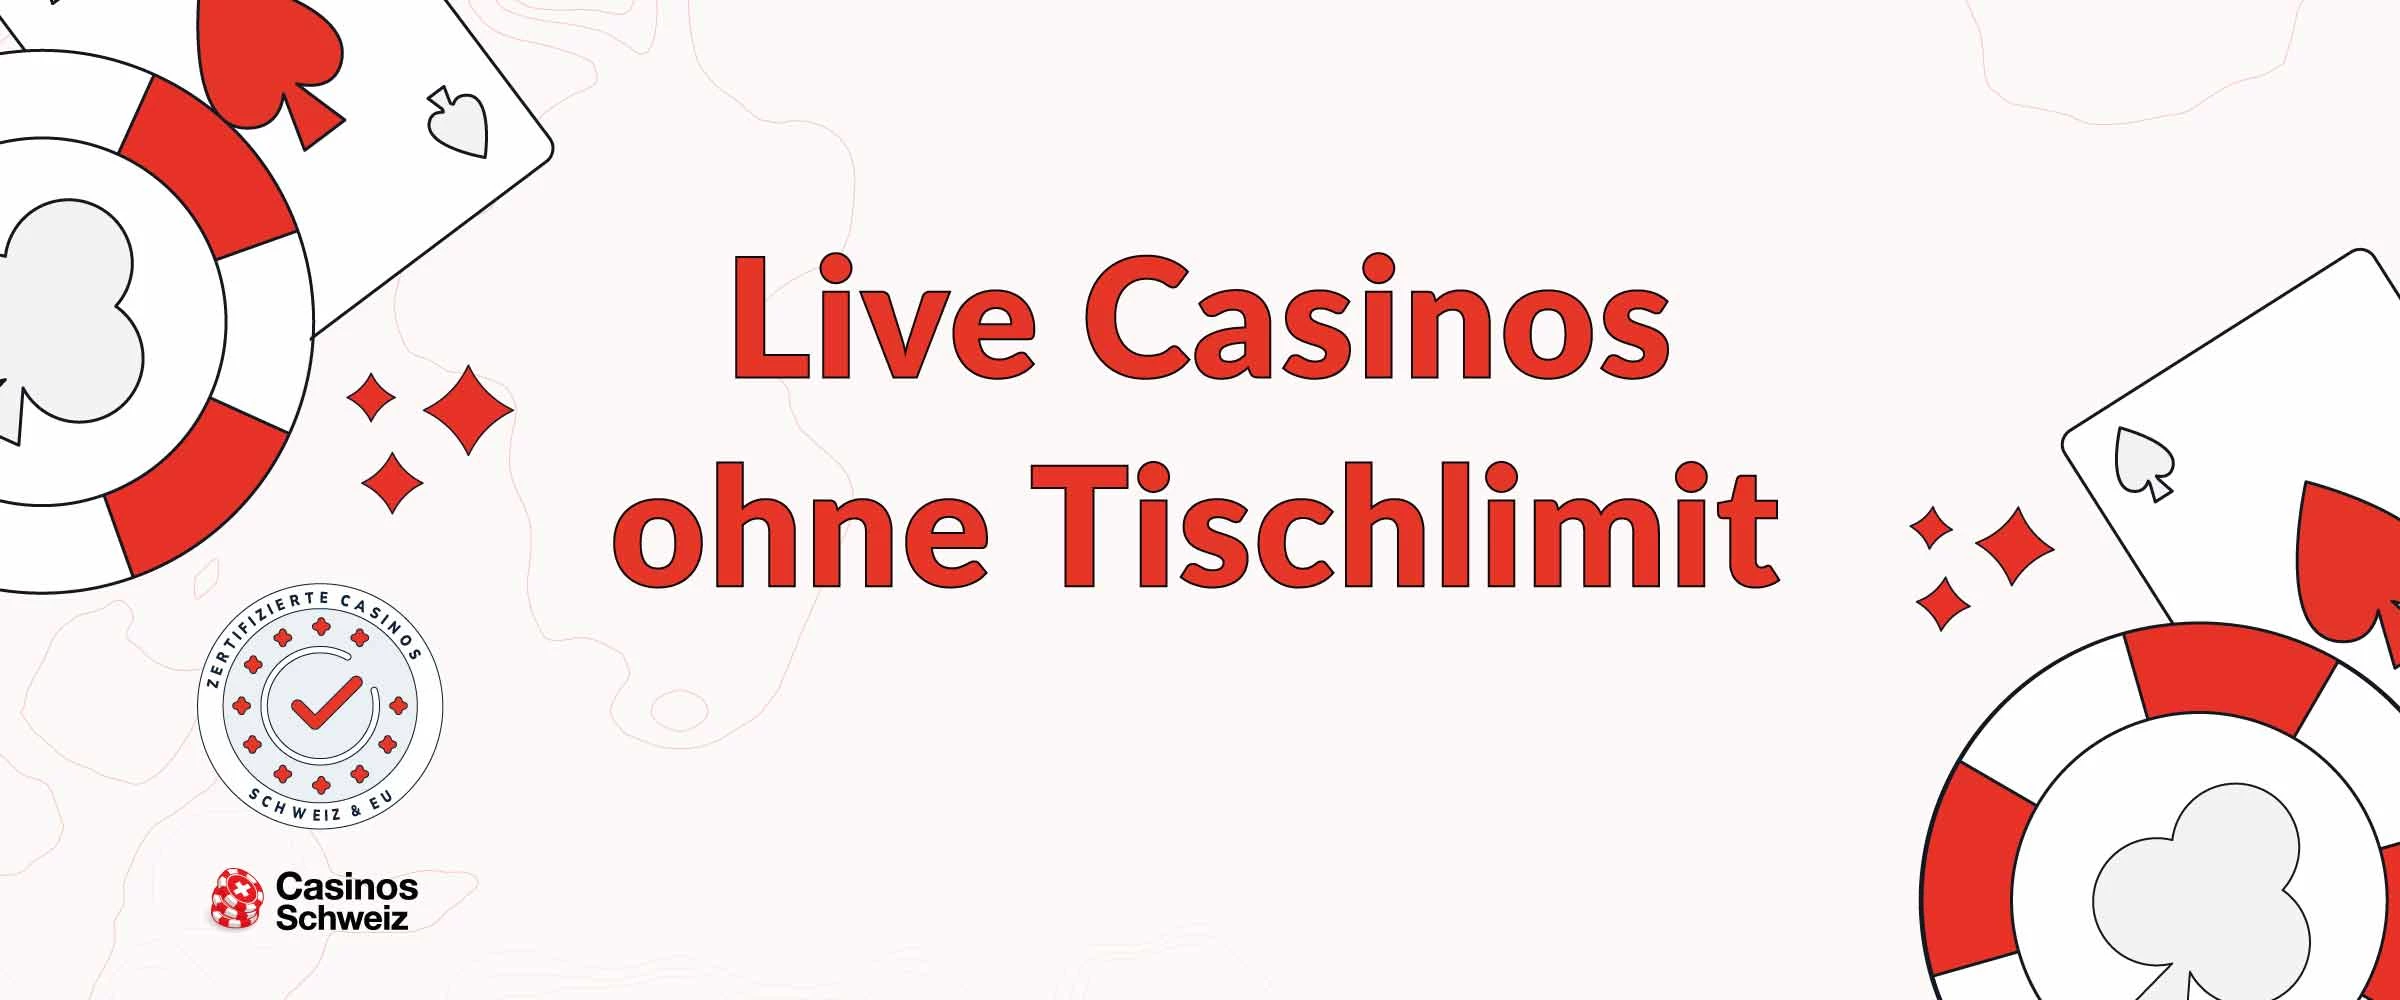 Live Casinos ohne Tischlimit